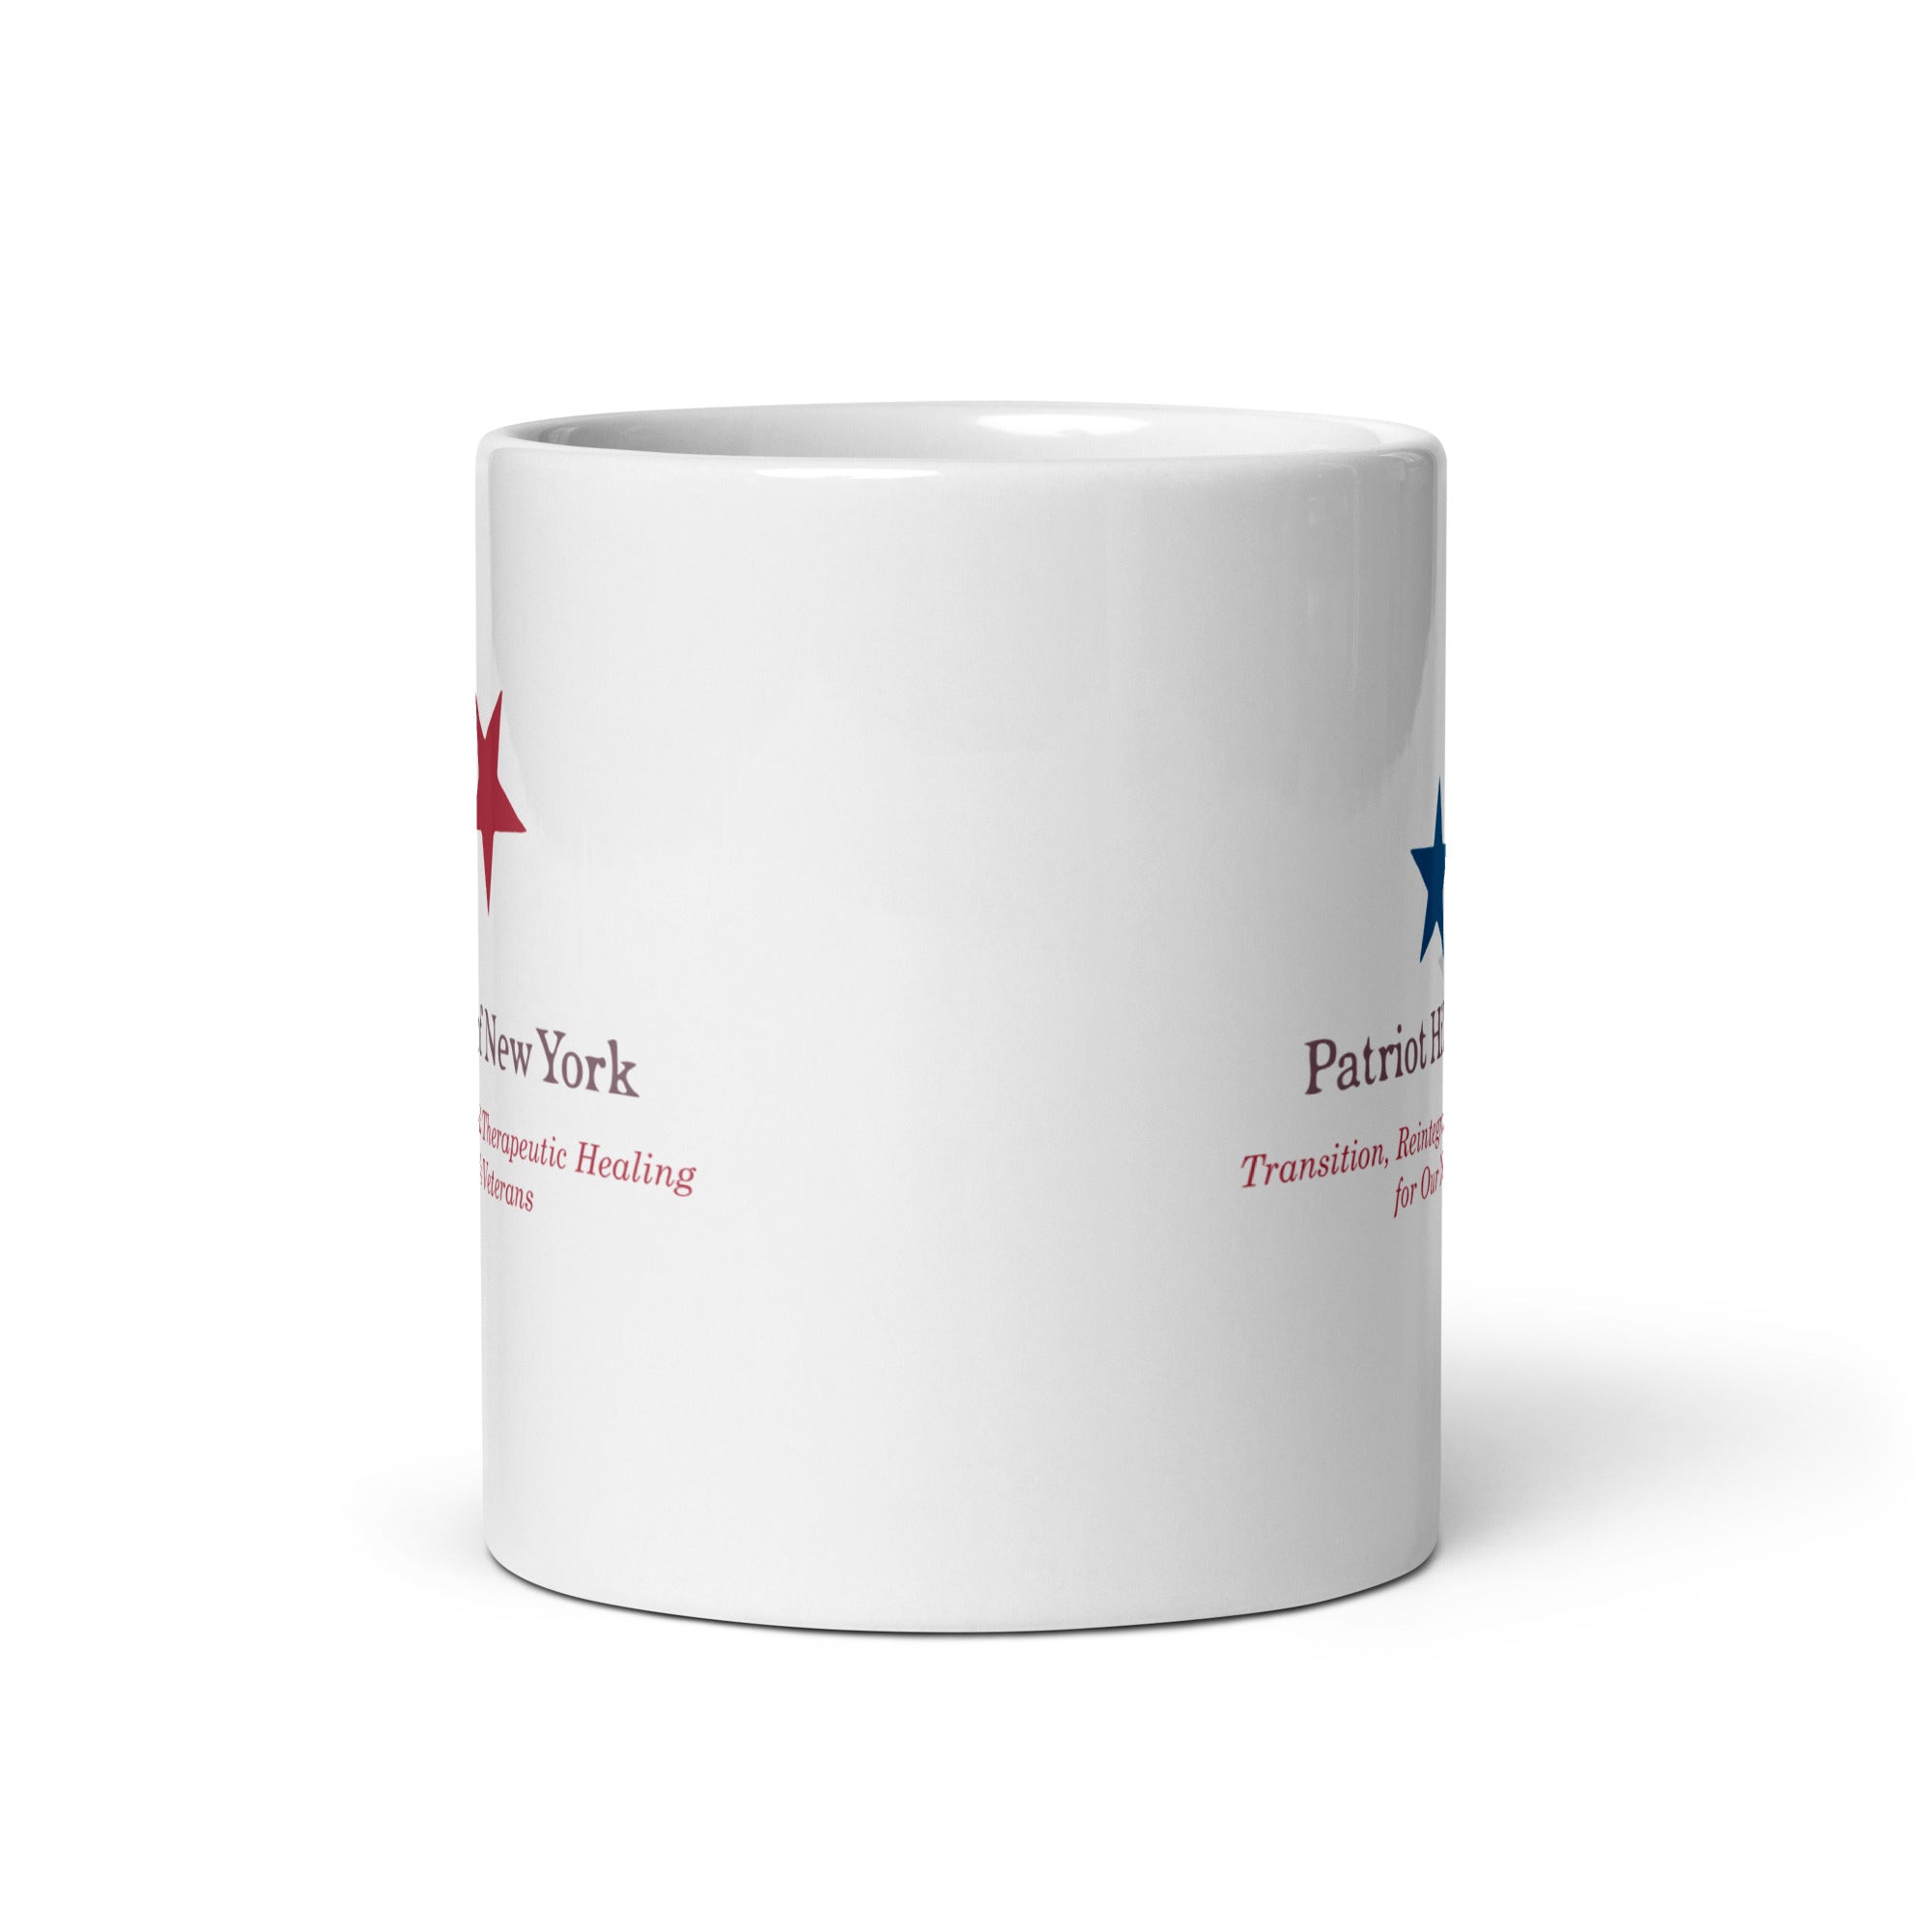 PHNY White glossy mug